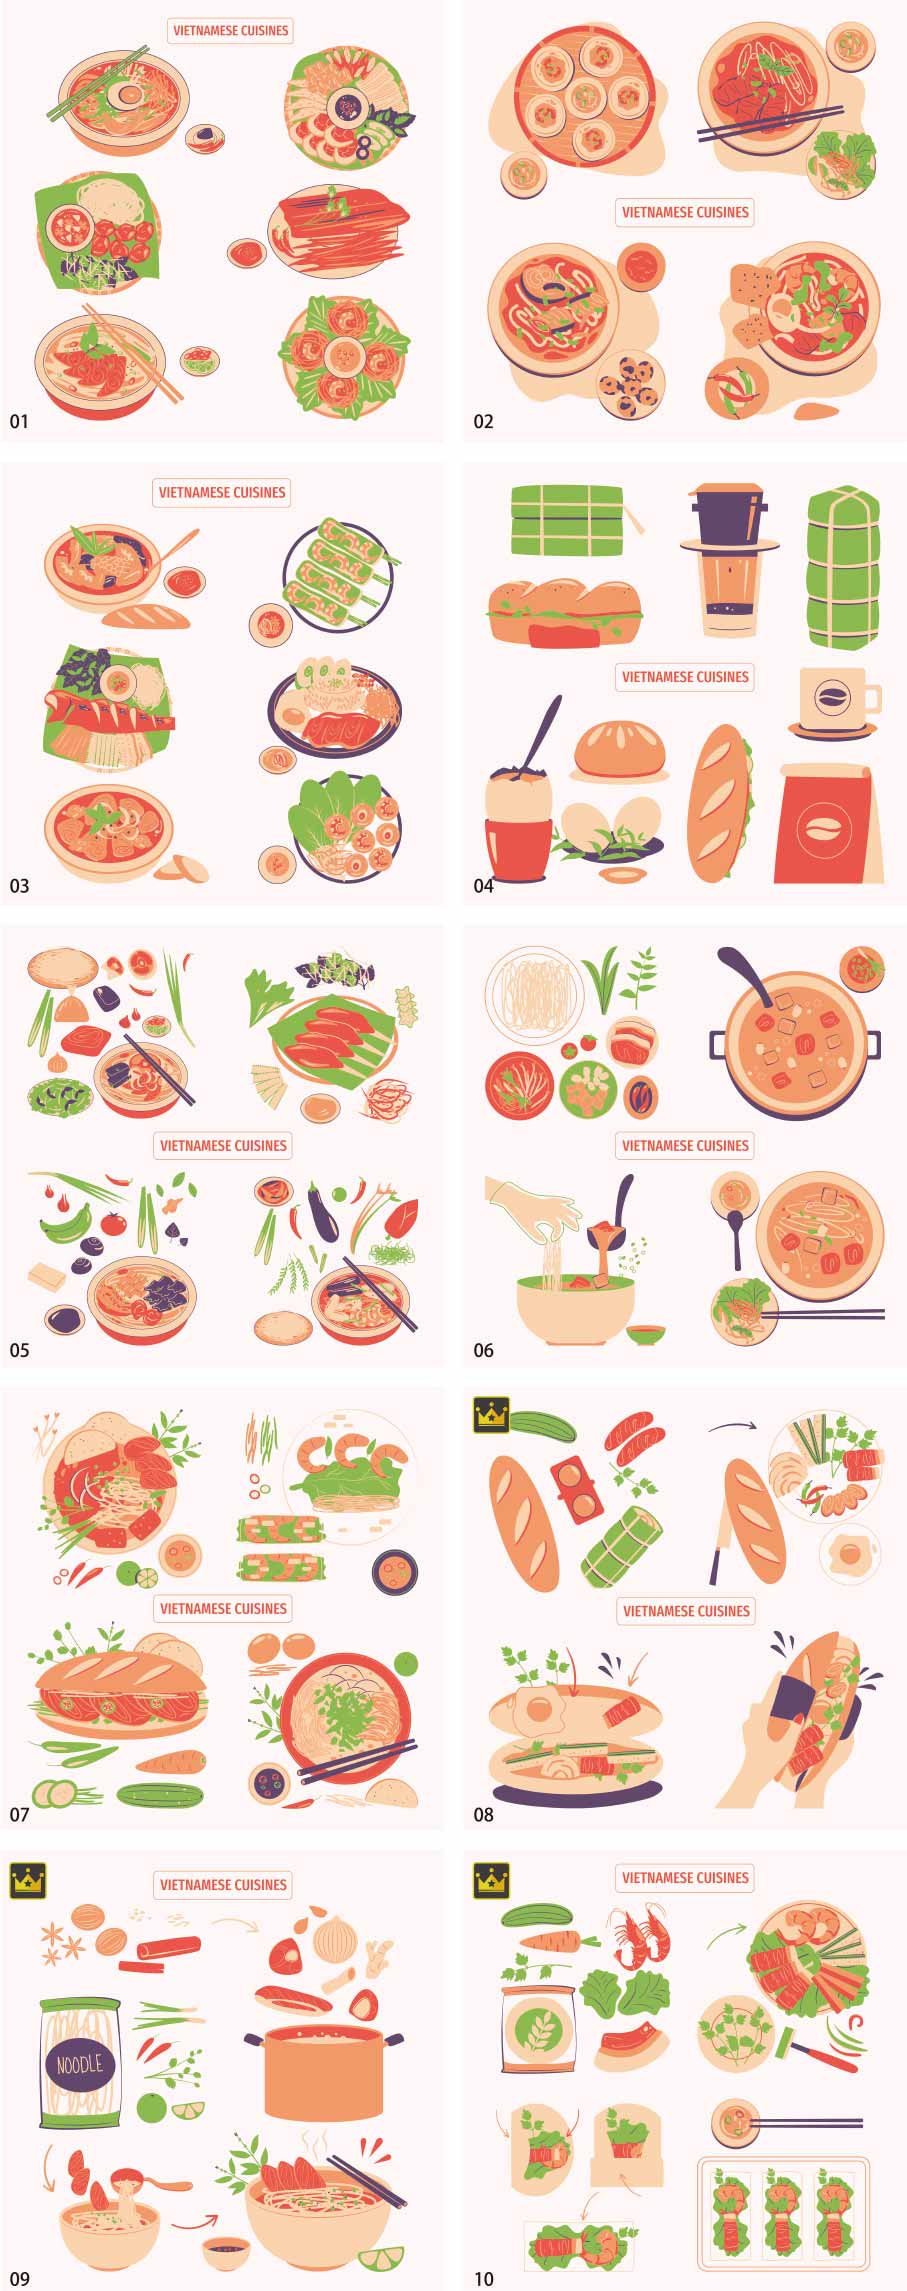 Bộ sưu tập minh họa món ăn Việt Nam